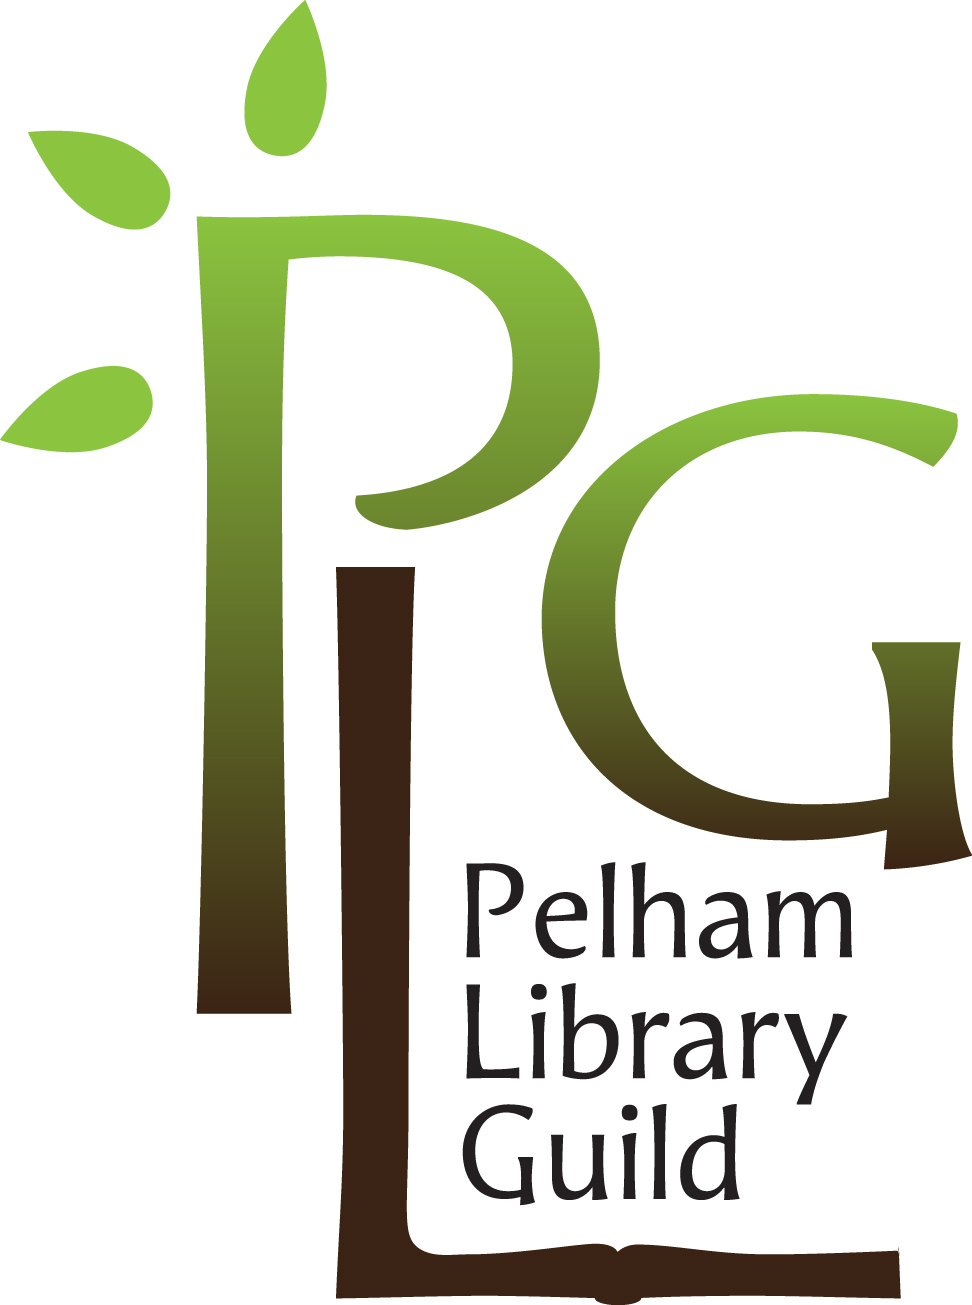 Logo for the Pelham Library Guild